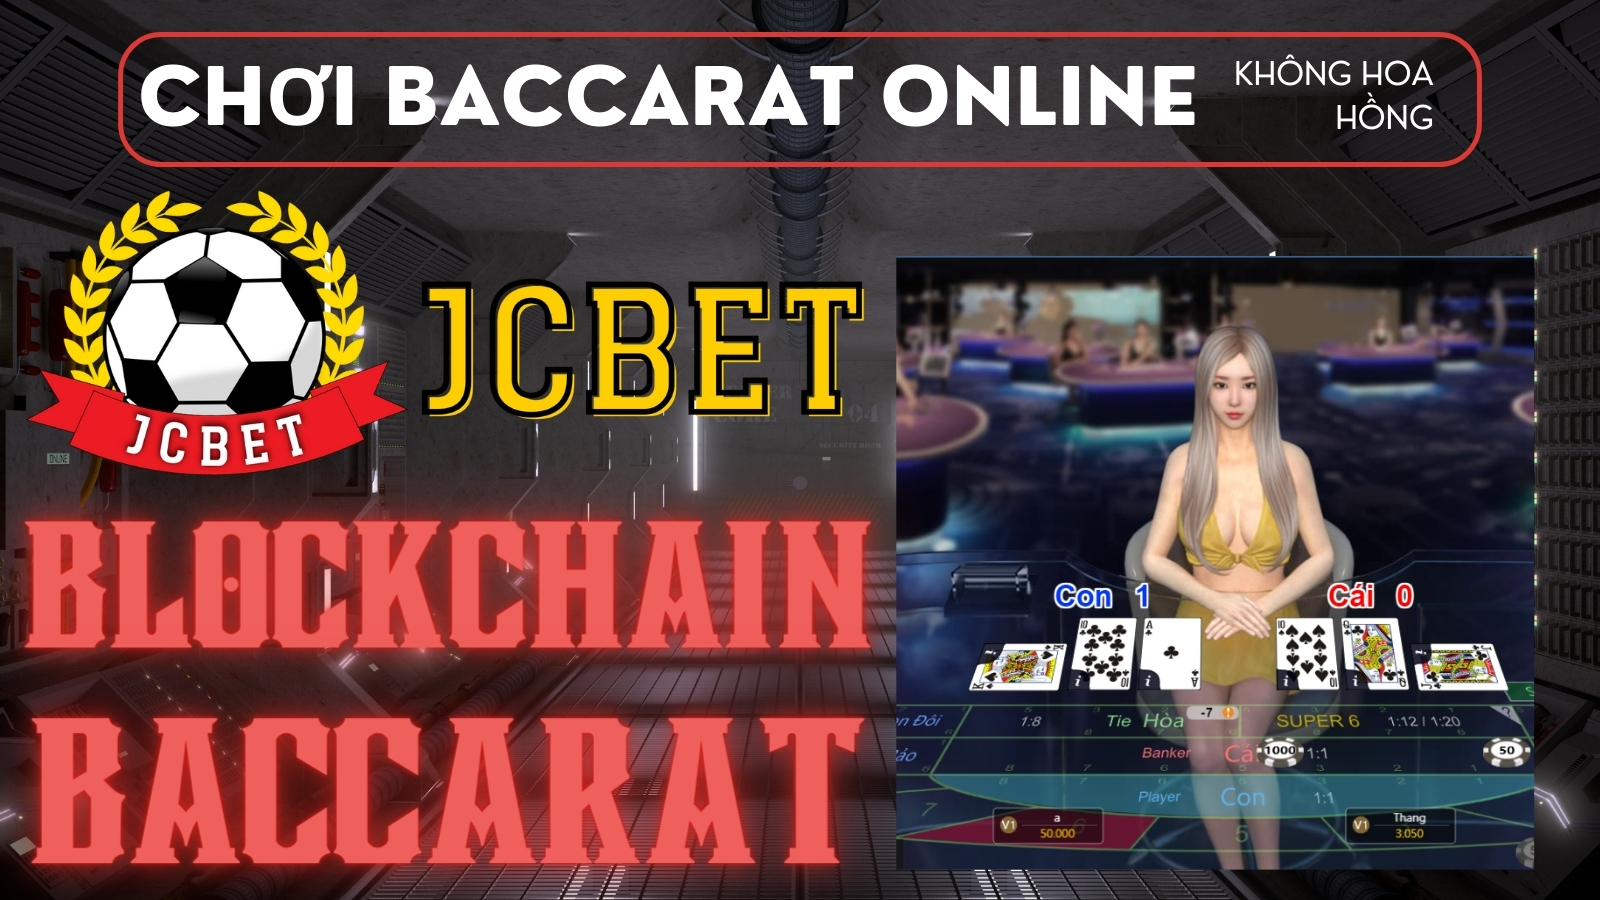 Blockchain Baccarat